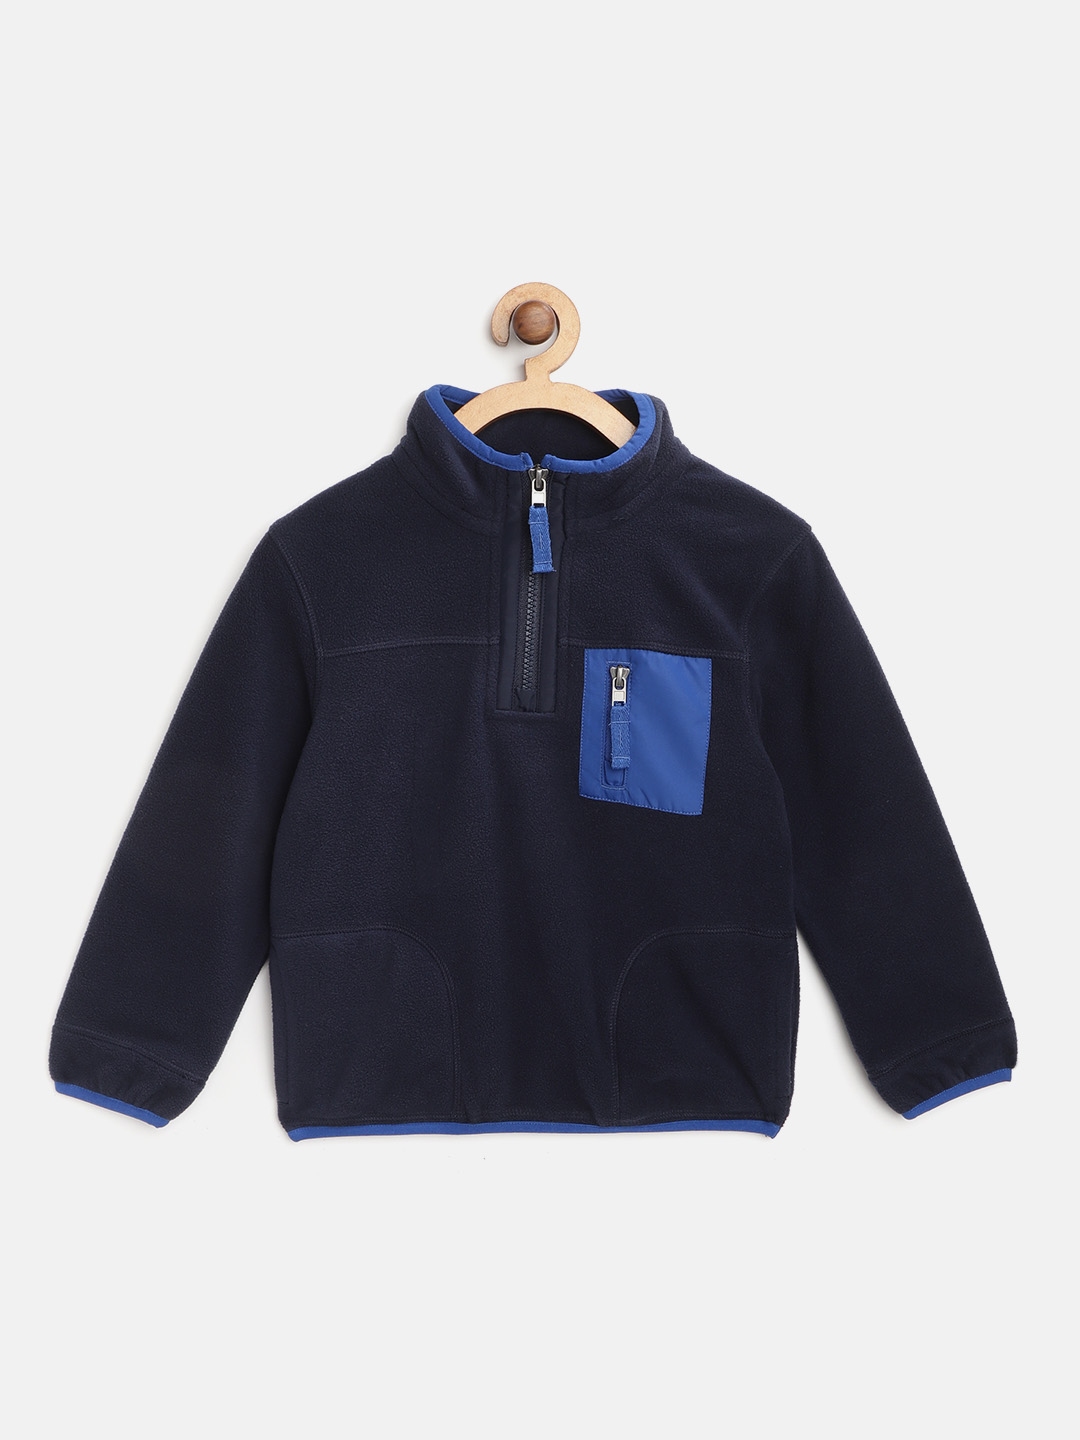 Buy Marks & Spencer Girls Navy Blue Solid Fleece Sweatshirt ...